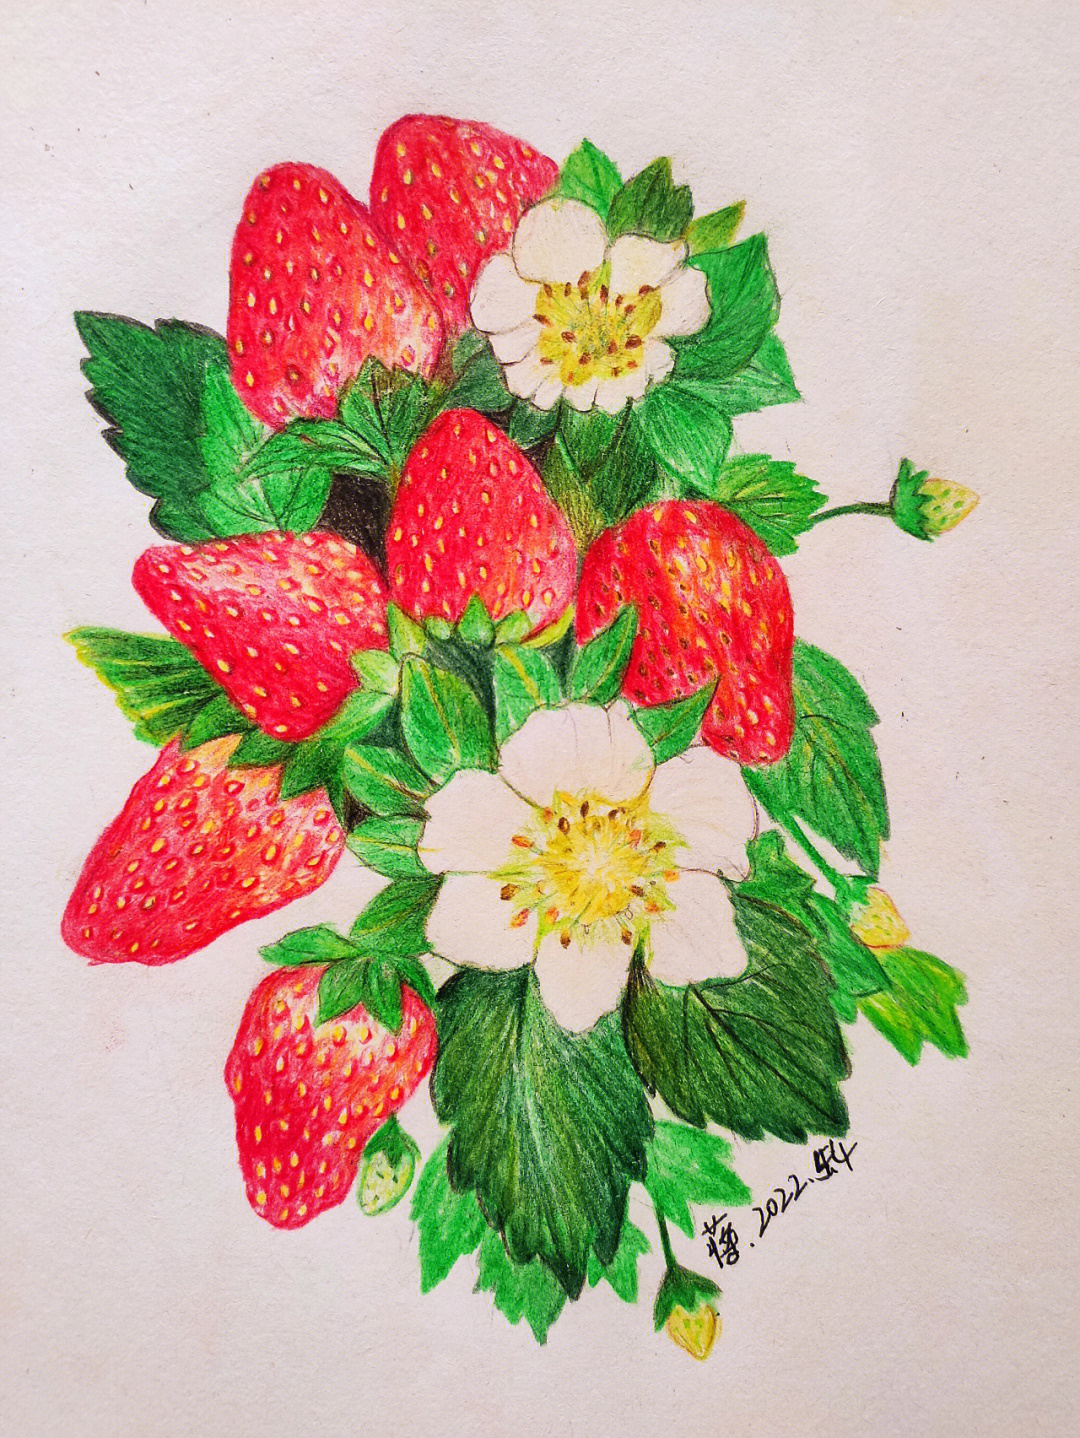 彩铅画草莓的步骤图片图片